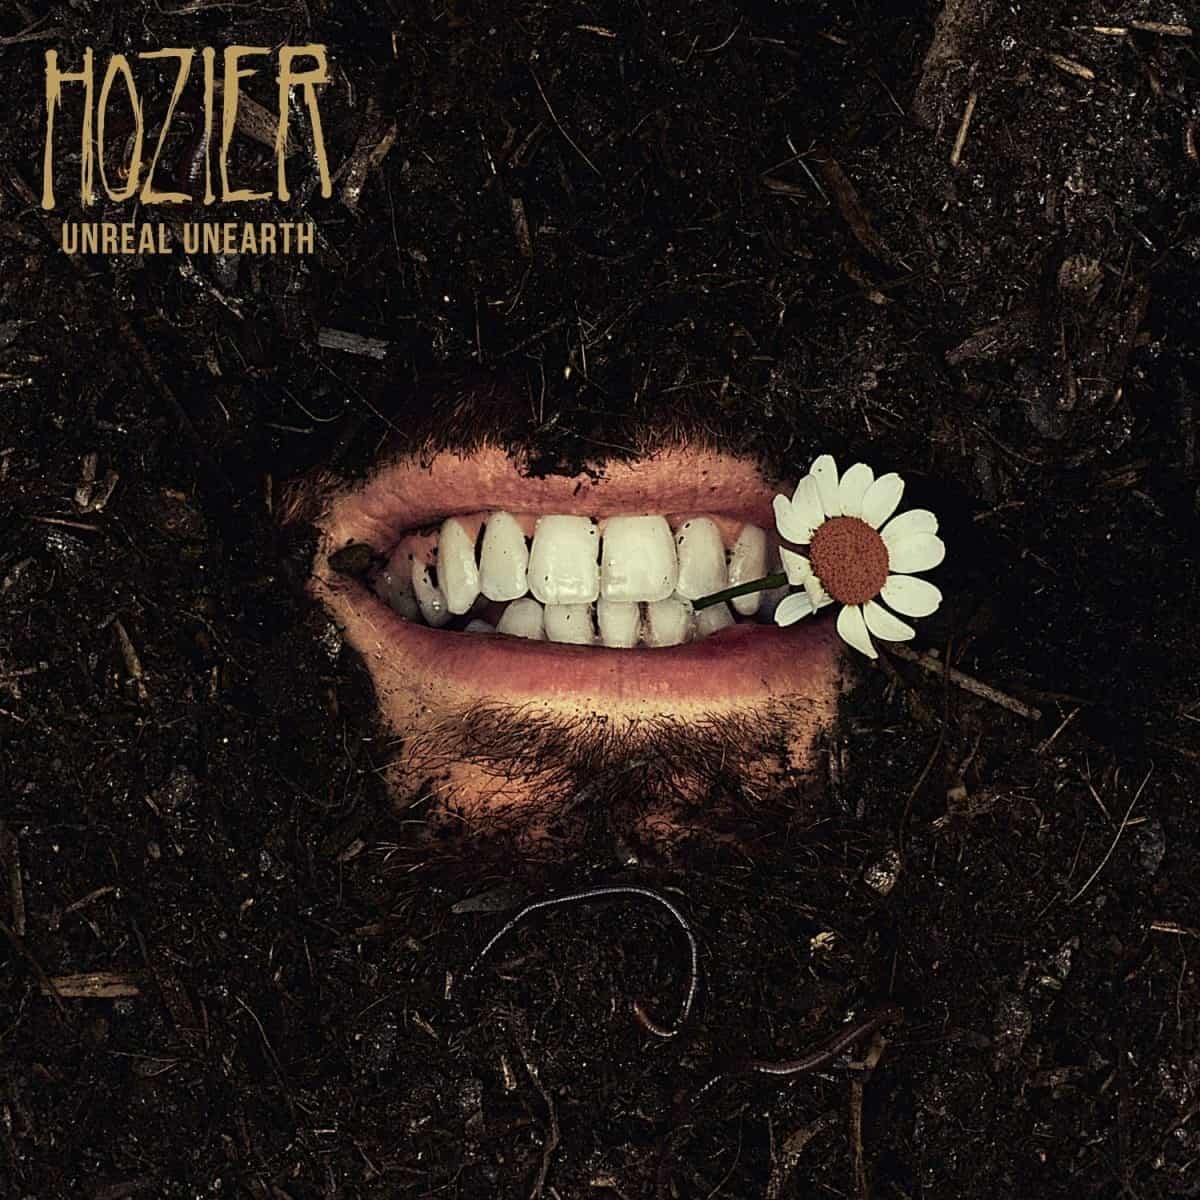 Hozier Unreal Unearth cover artwork